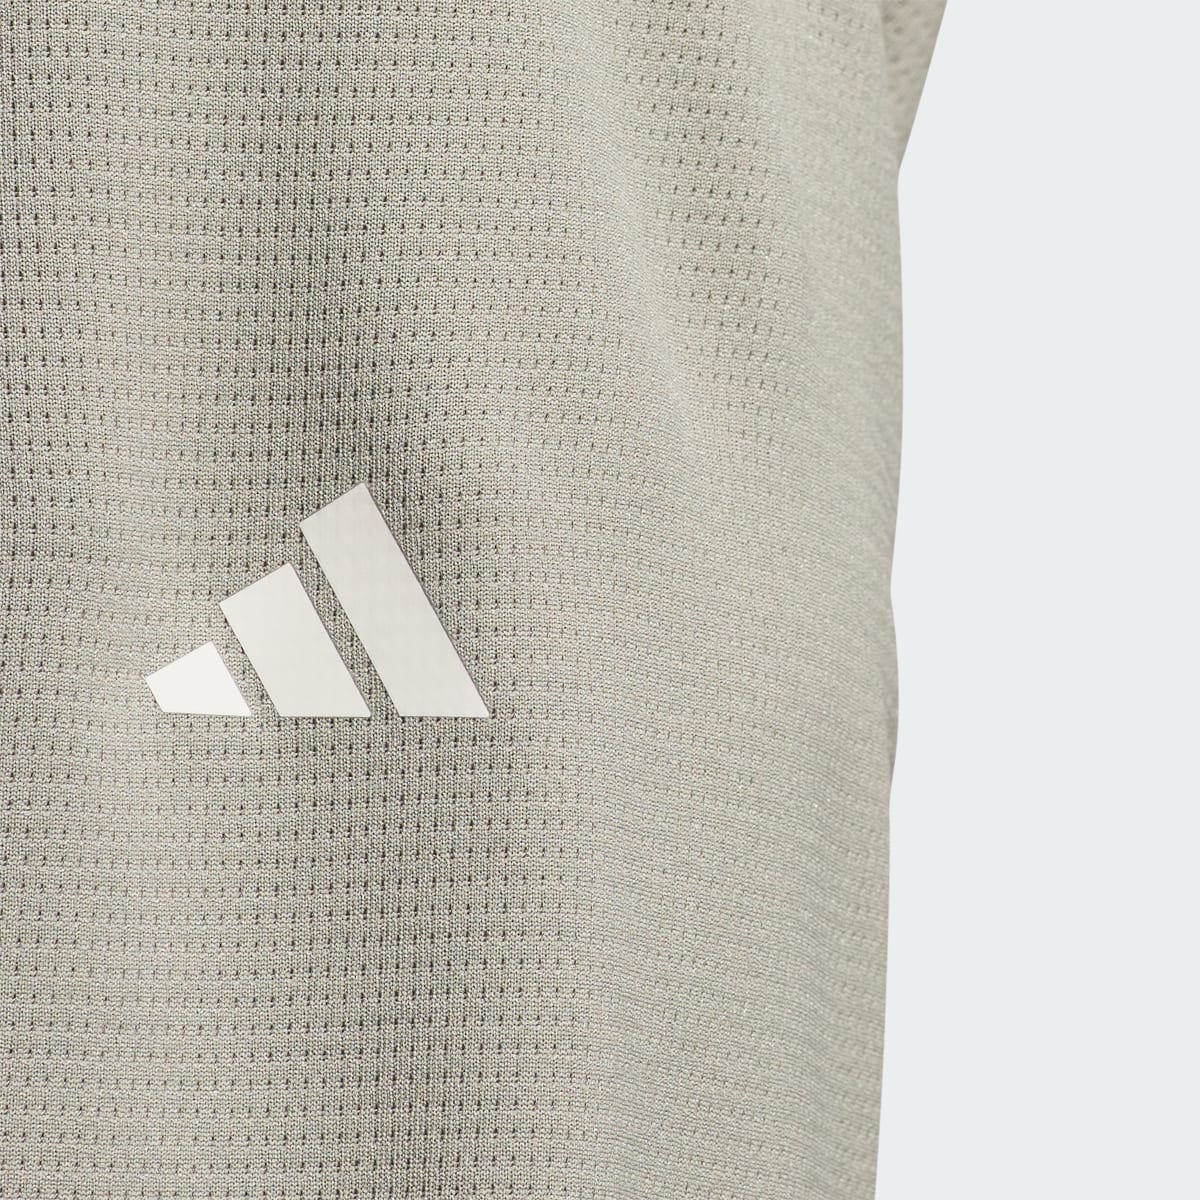 Adidas Lightweight Half-Zip Top. 7